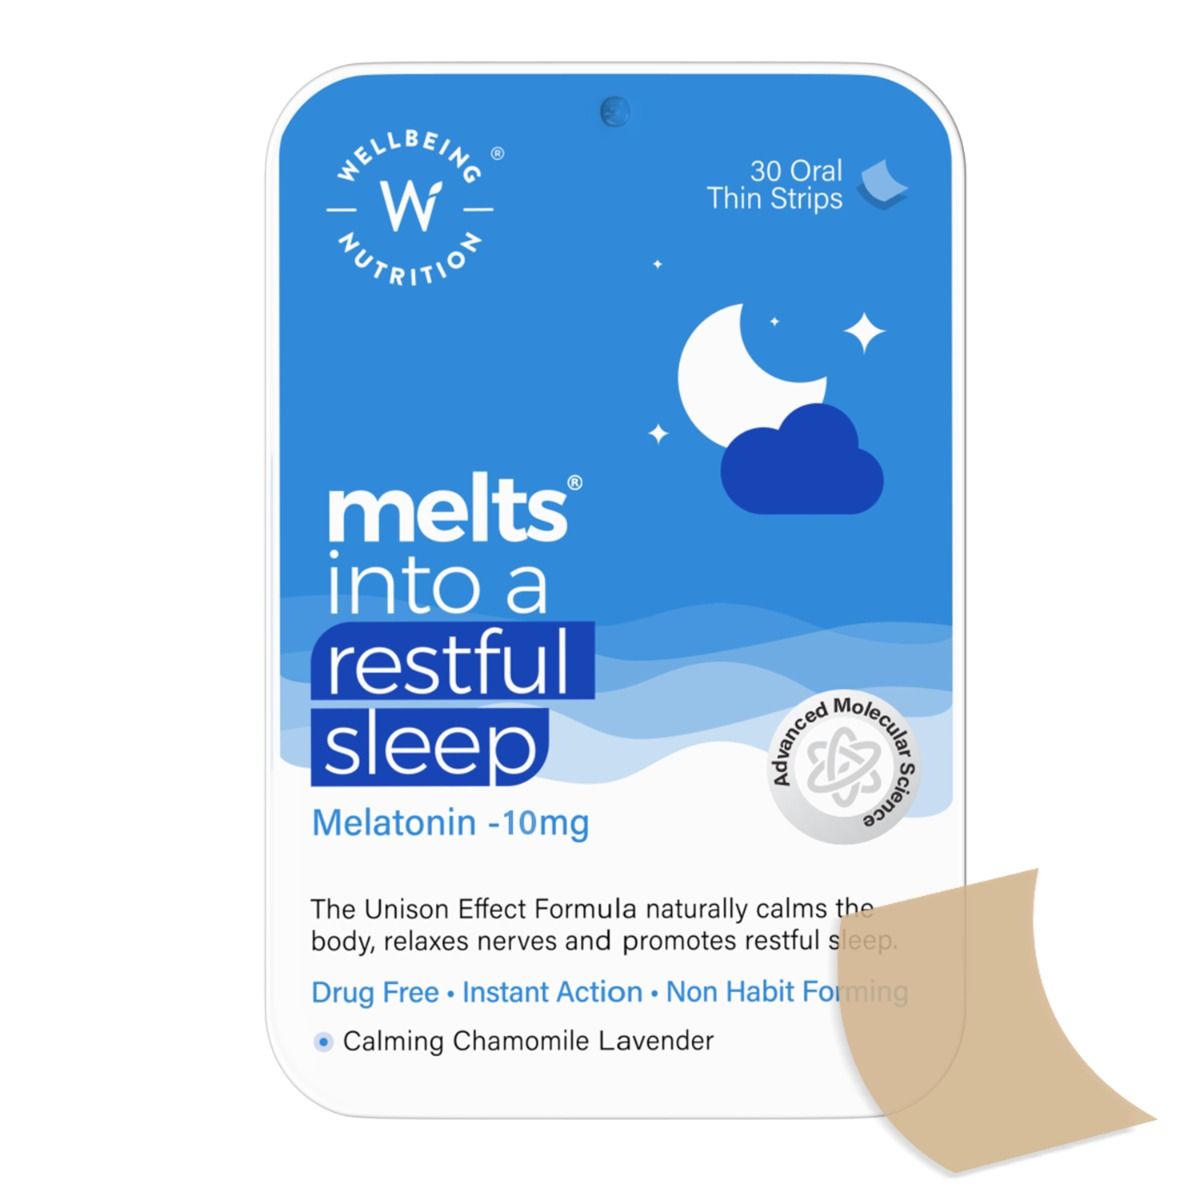 Buy Wellbeing Nutrition Melts Into Restful Sleep Melatonin 10 mg, 30 Strips Online